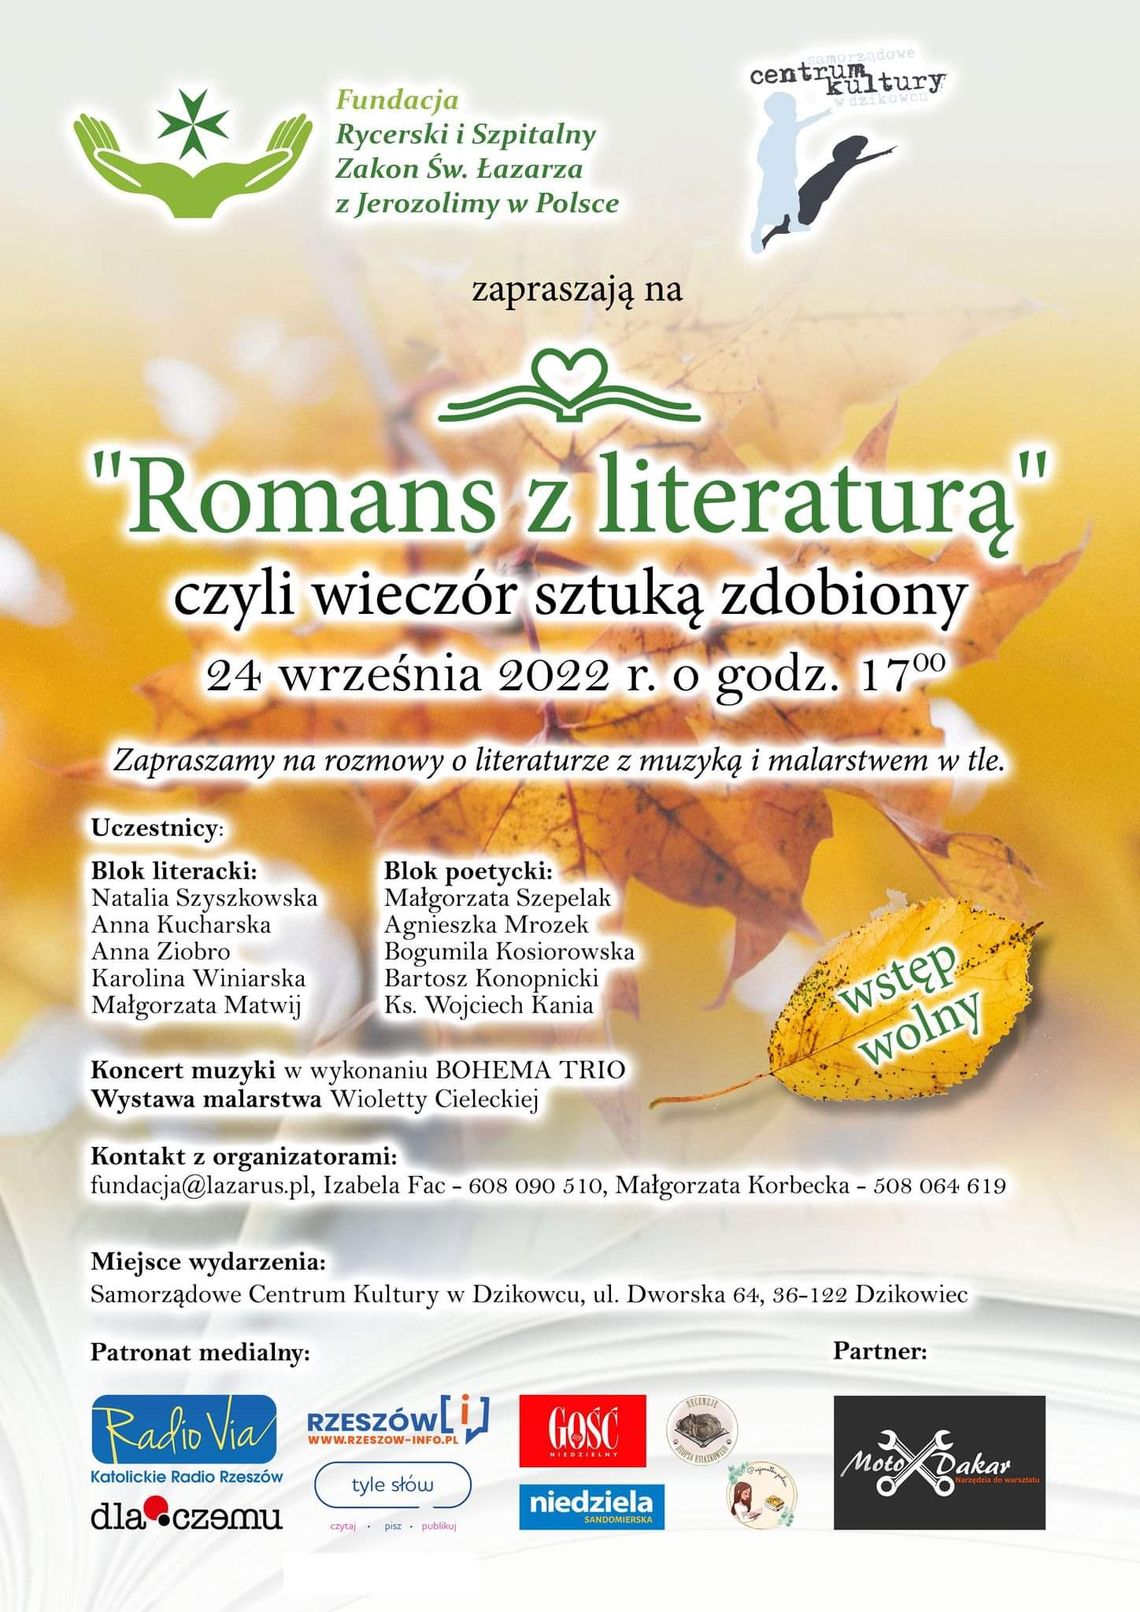 Wydarzenie "Romans z literaturą", rozmowa z organizatorkami wydarzenia, Małgorzatą Korbecką i Izabelą Fac